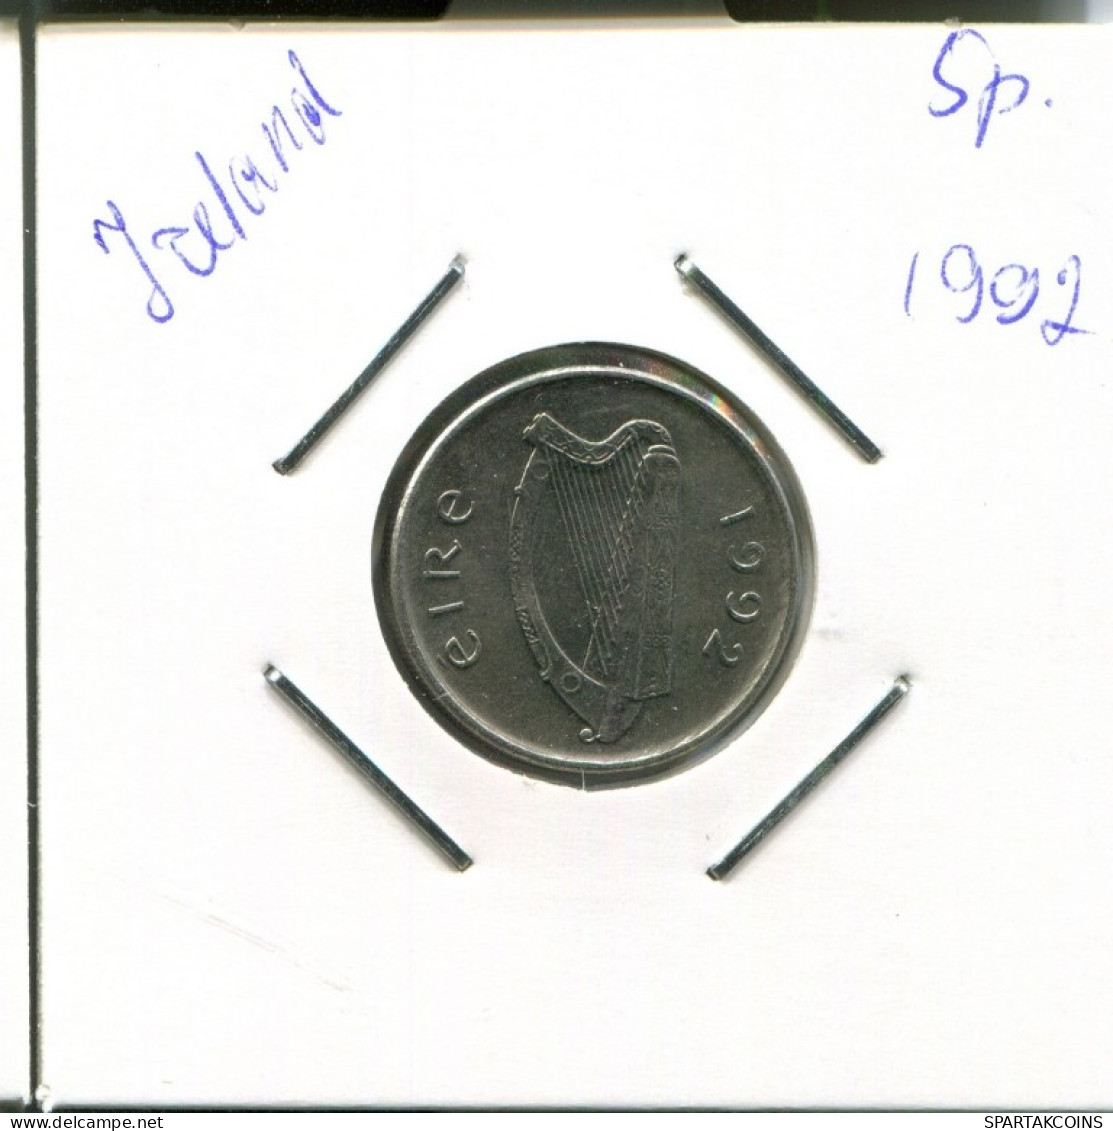 5 PENCE 1992 IRLAND IRELAND Münze #AN602.D.A - Irlande